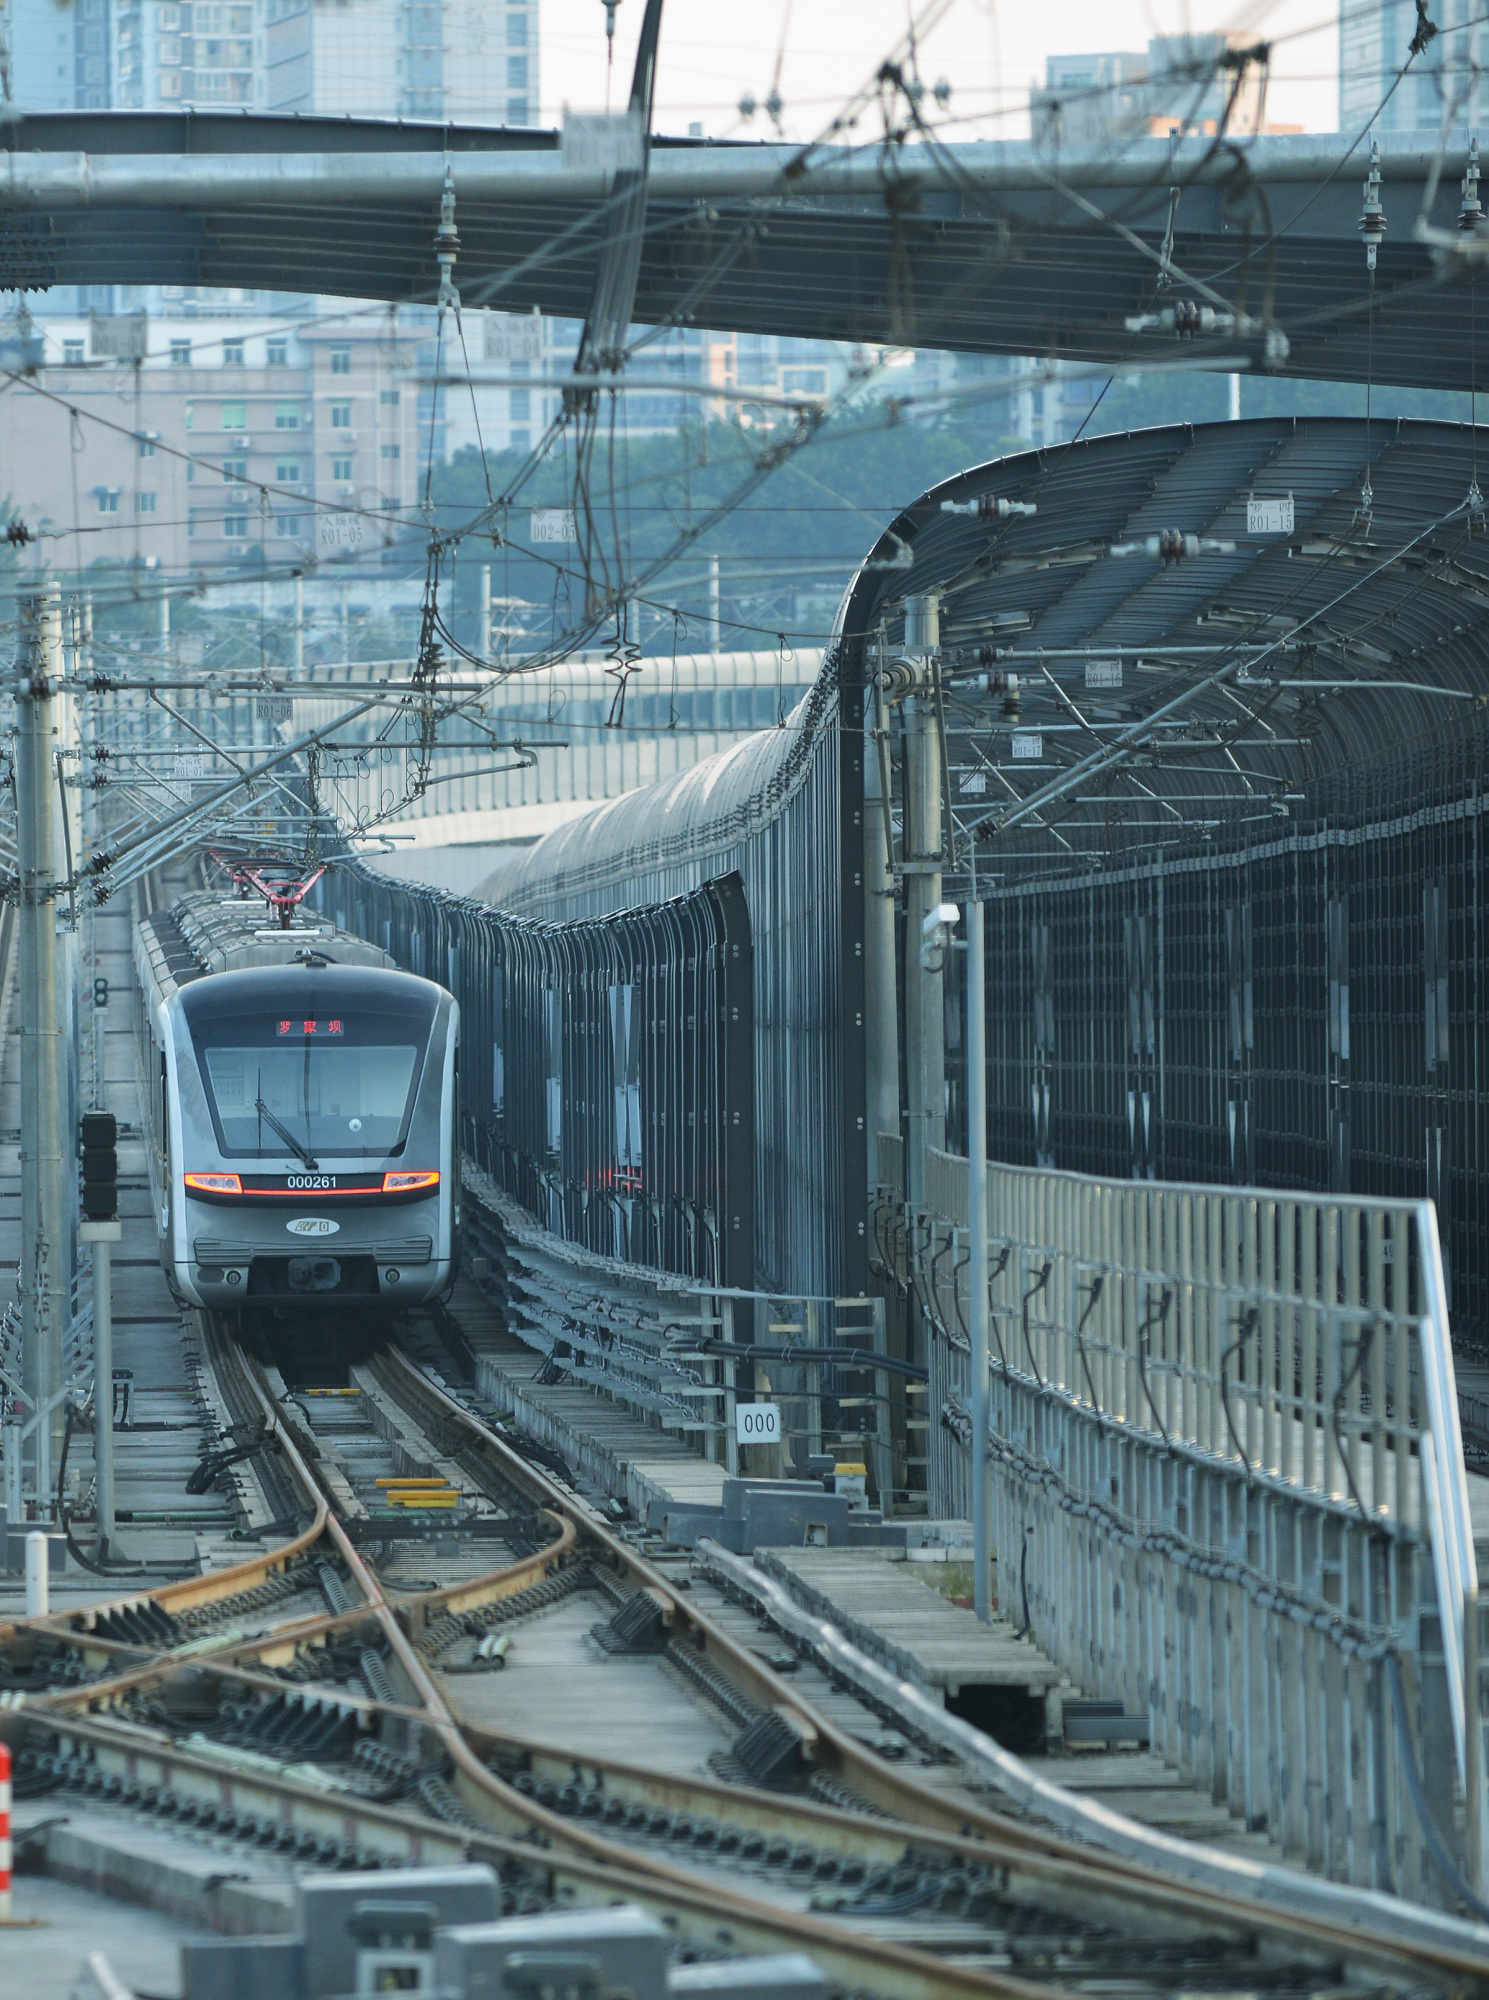 评重庆轨道交通环线罗家坝站的低调开通:乘客很少,未来或有重用